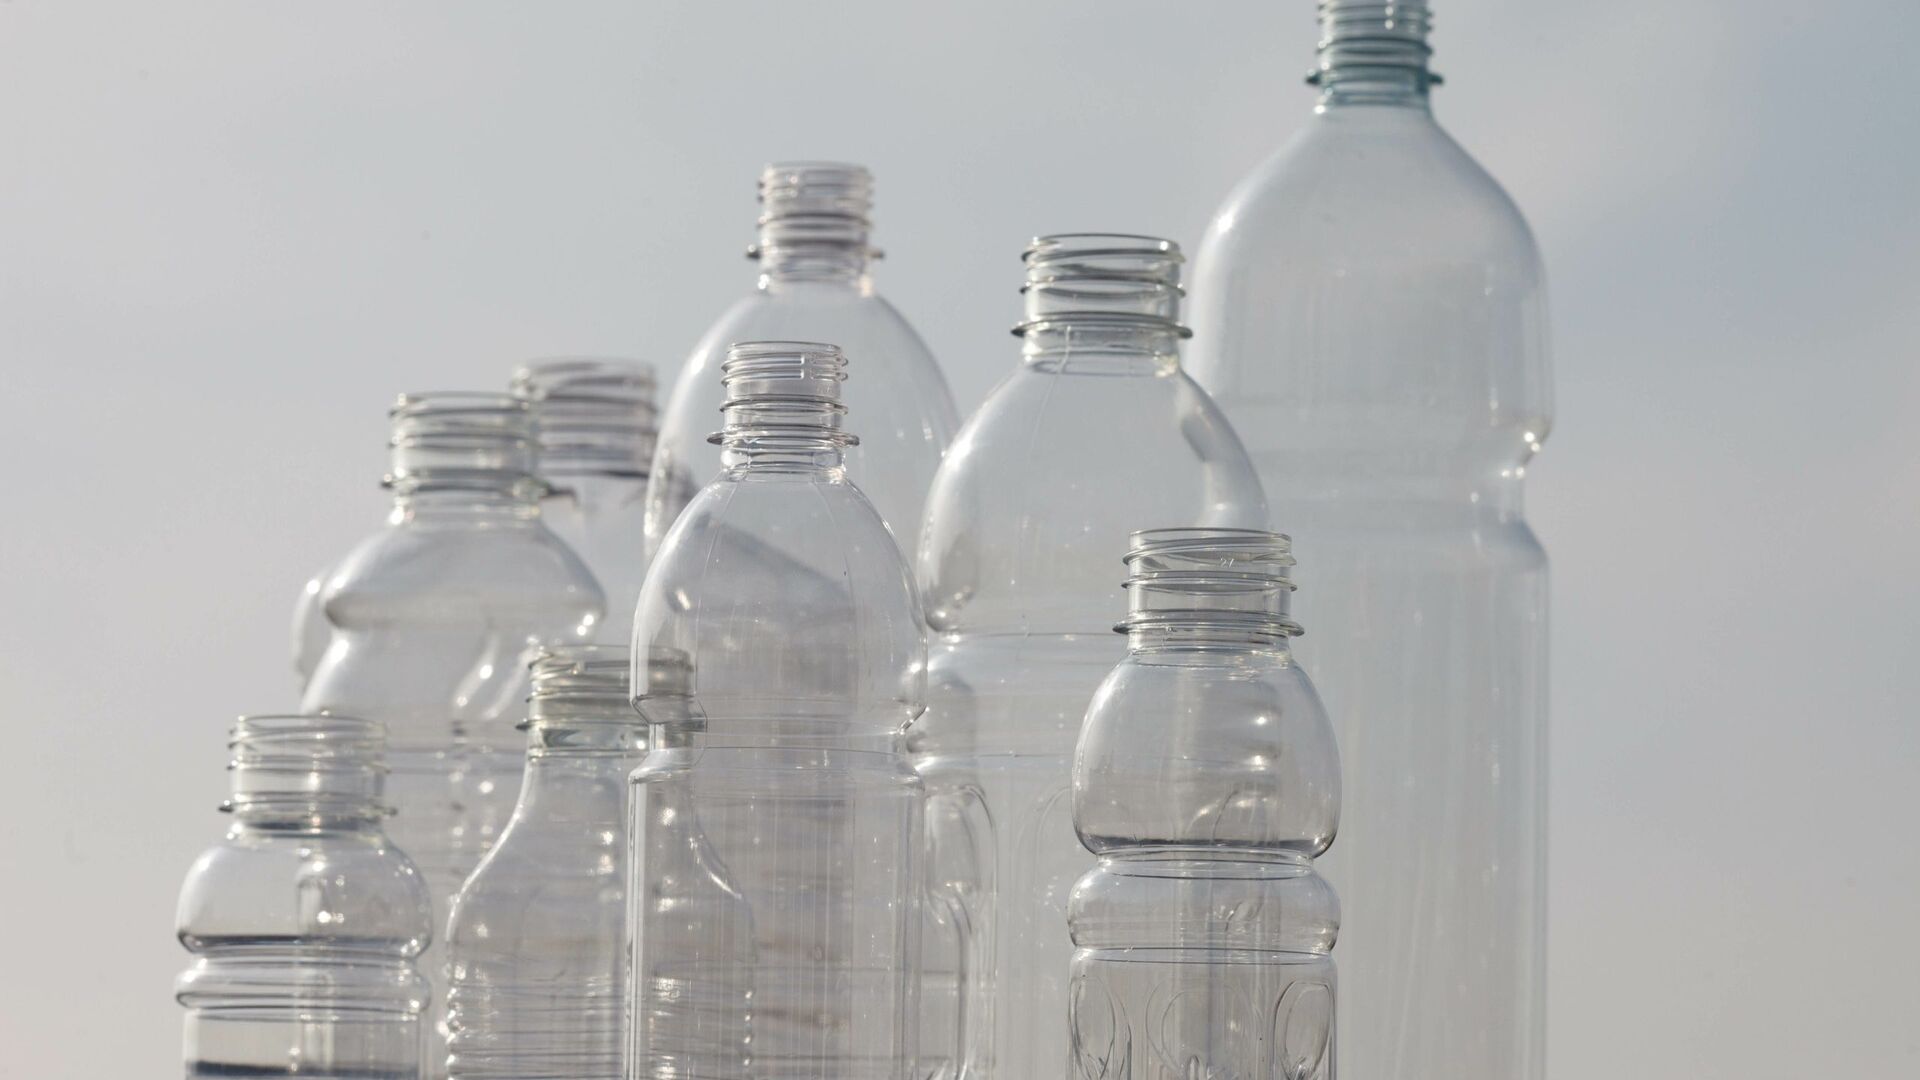 PET: bottiglie in polietilene tereftalato riciclato